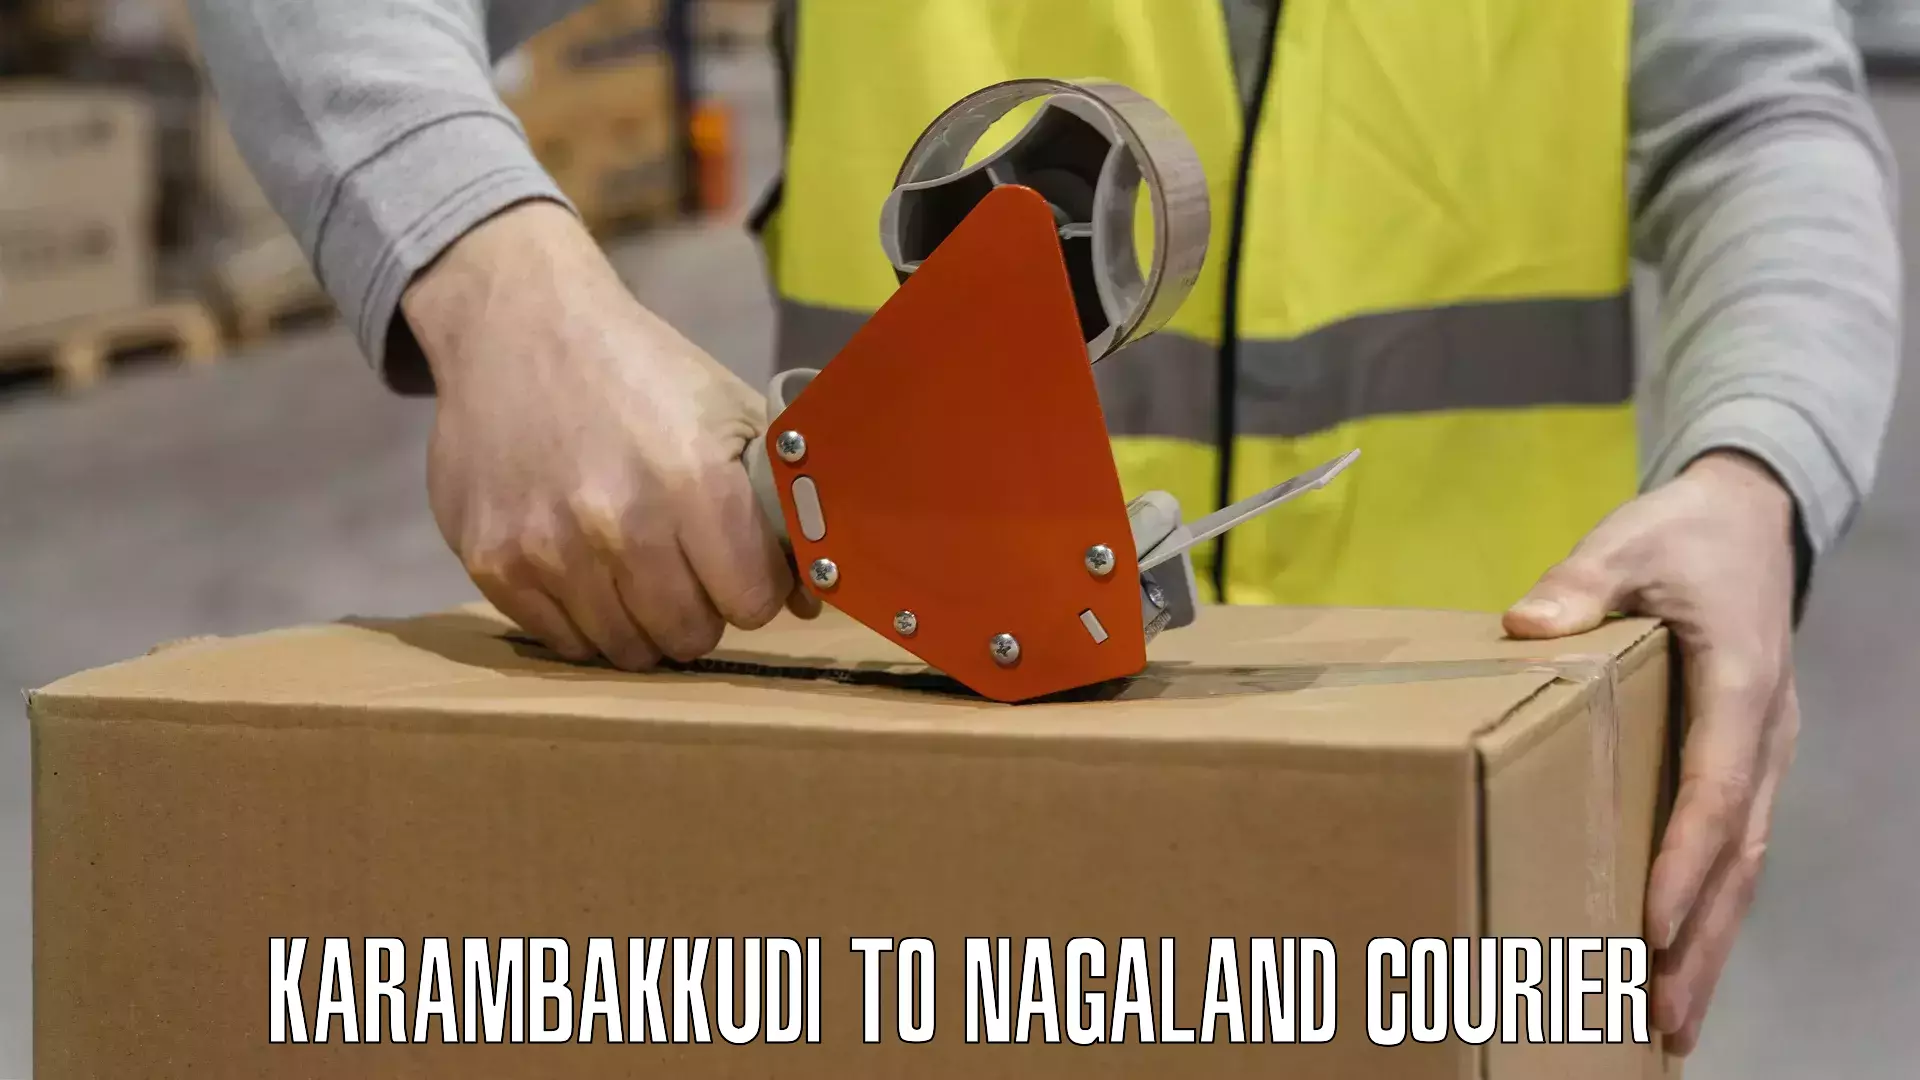 Premium courier solutions in Karambakkudi to Chumukedima